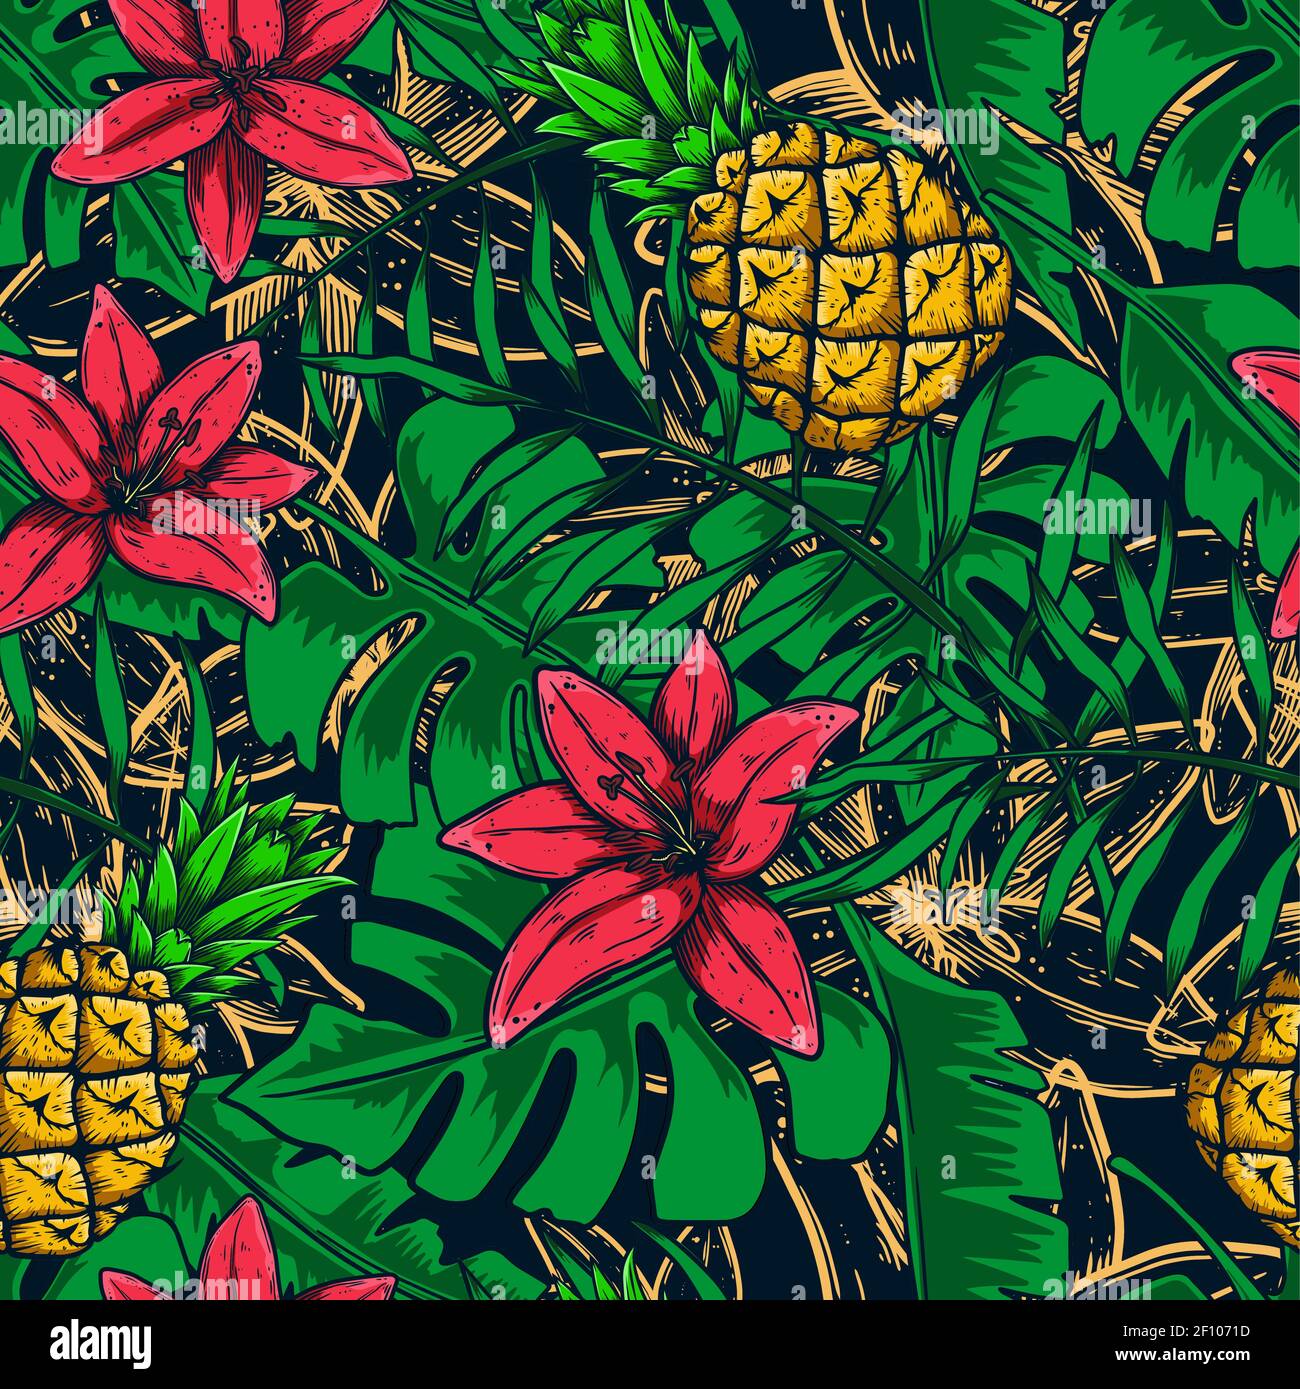 Nahtloses Muster mit tropischen Blättern, Früchten, Blumen. Gestaltungselement für Poster, Karte, Banner, Flyer, Kleiderdekoration. Vektorgrafik Stock Vektor